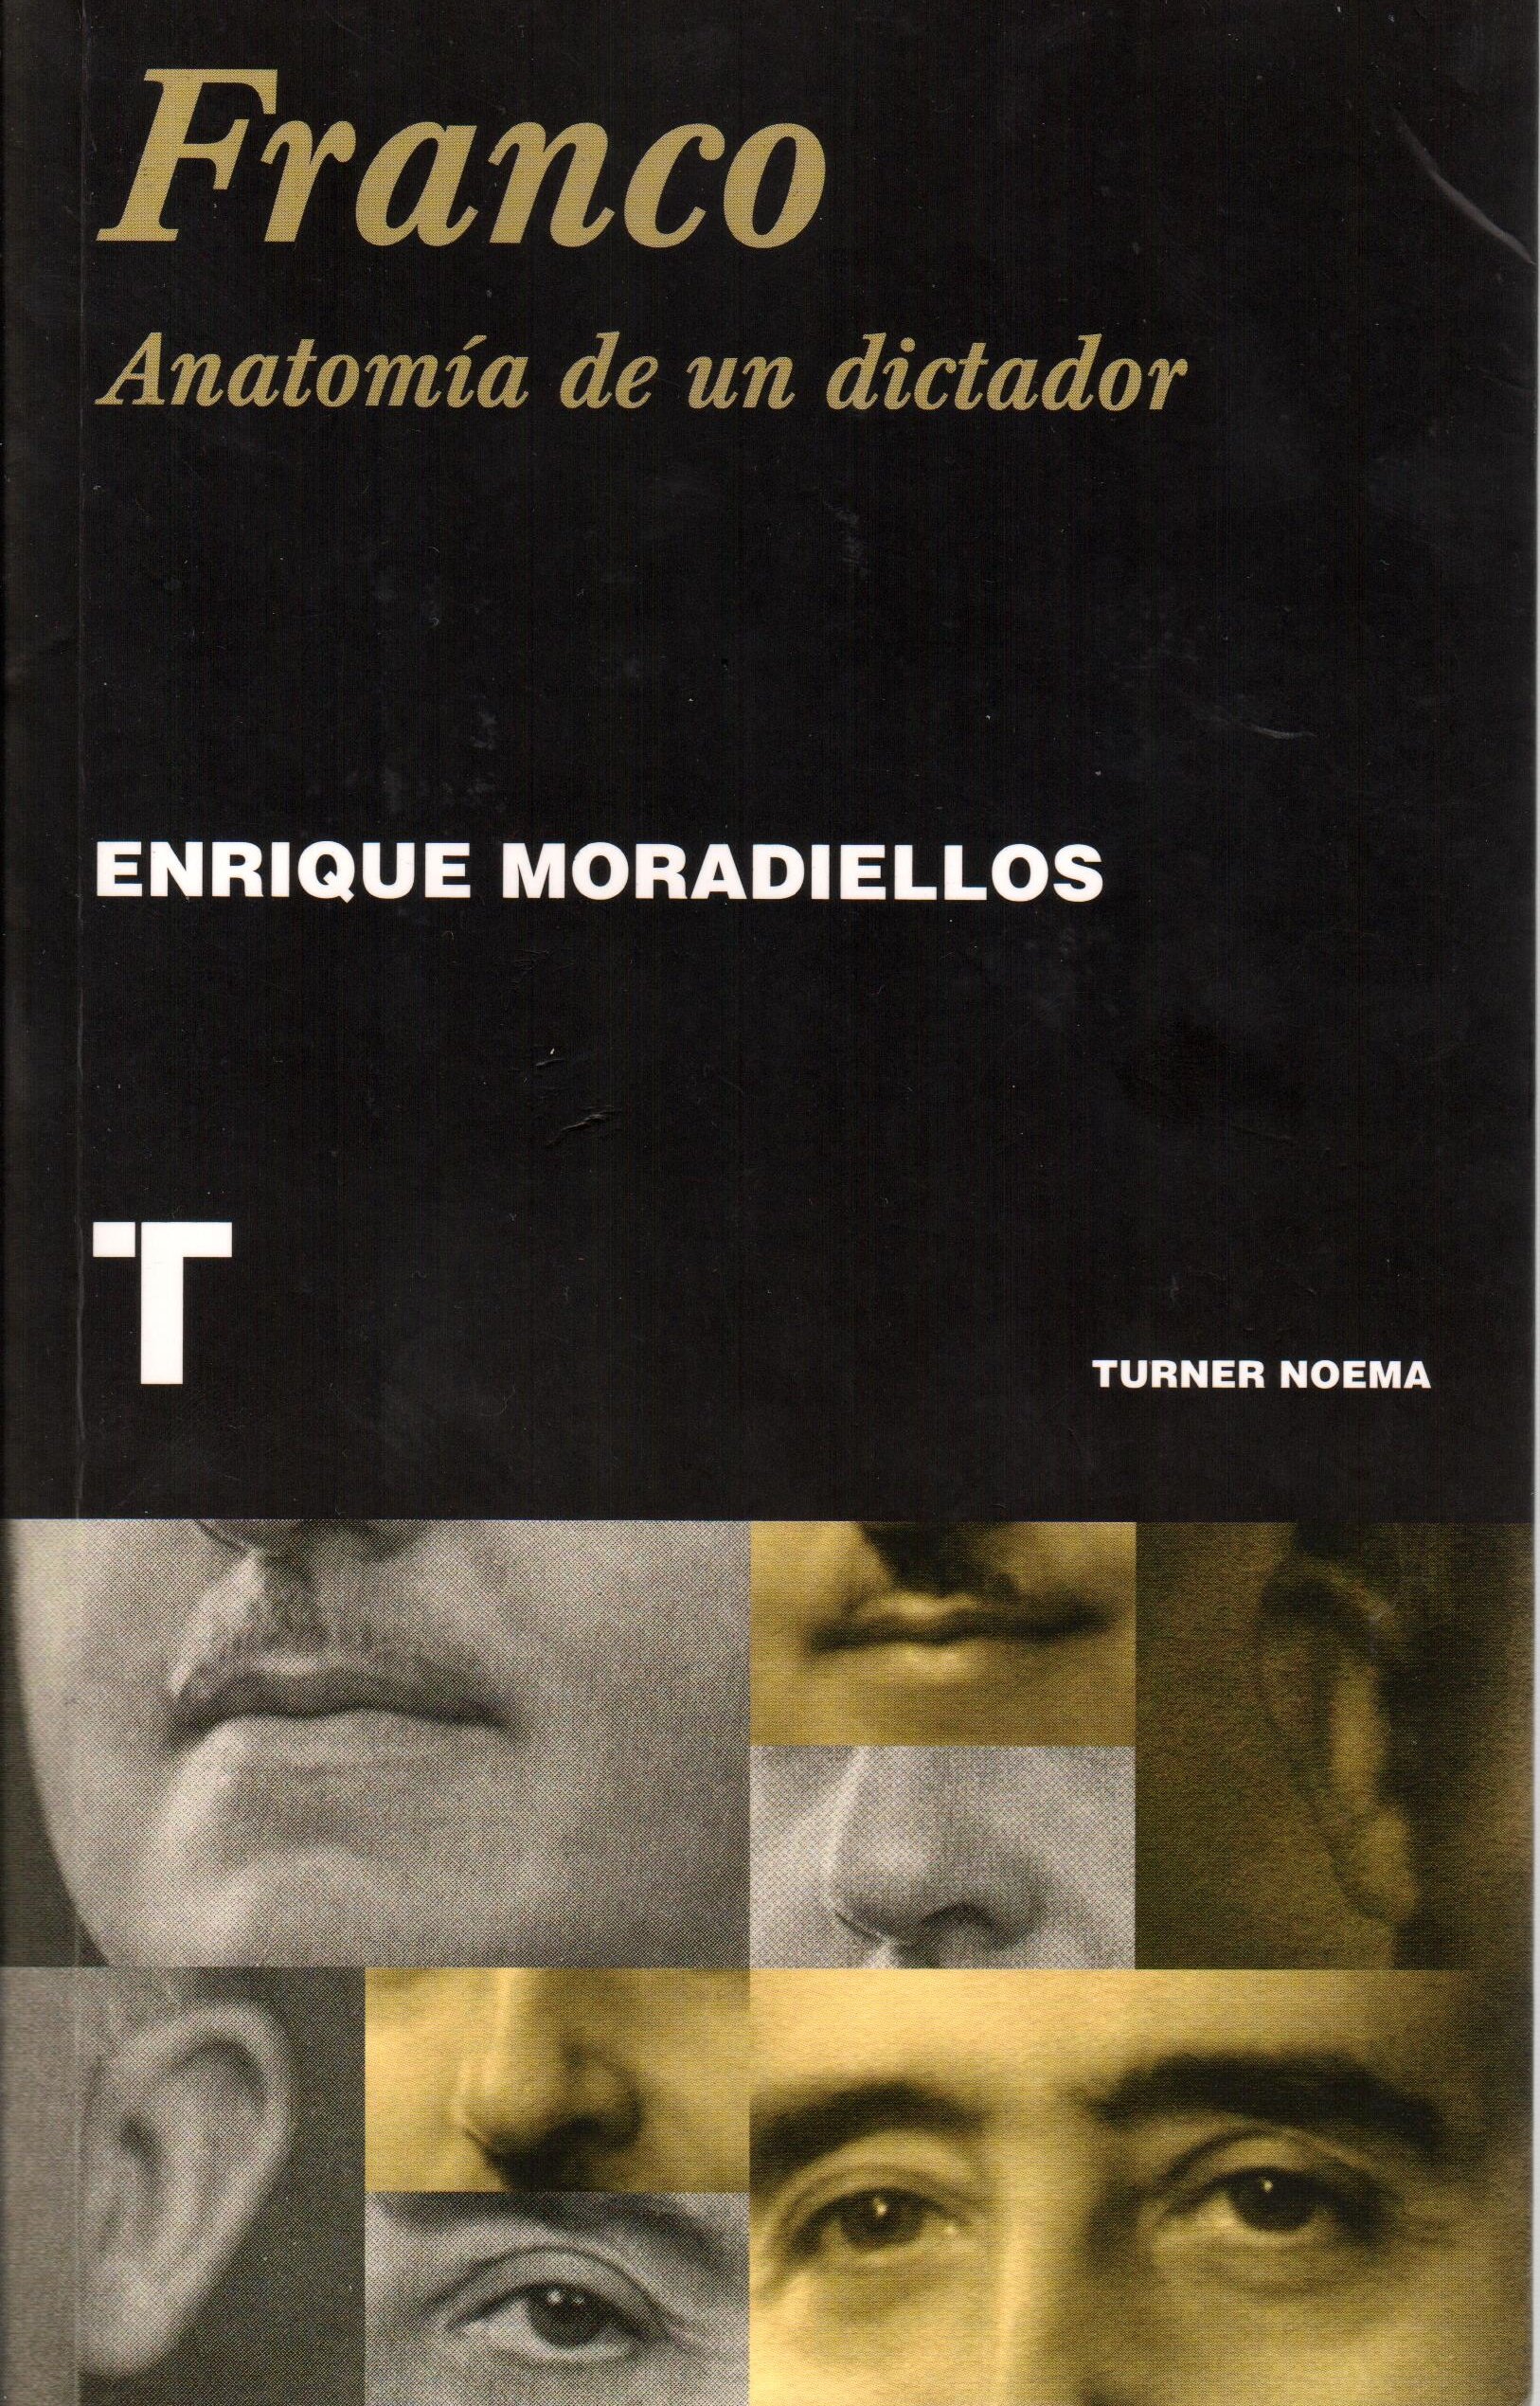 Enrique Moradiellos: "El régimen de Franco tenía profundos apoyos sociales"